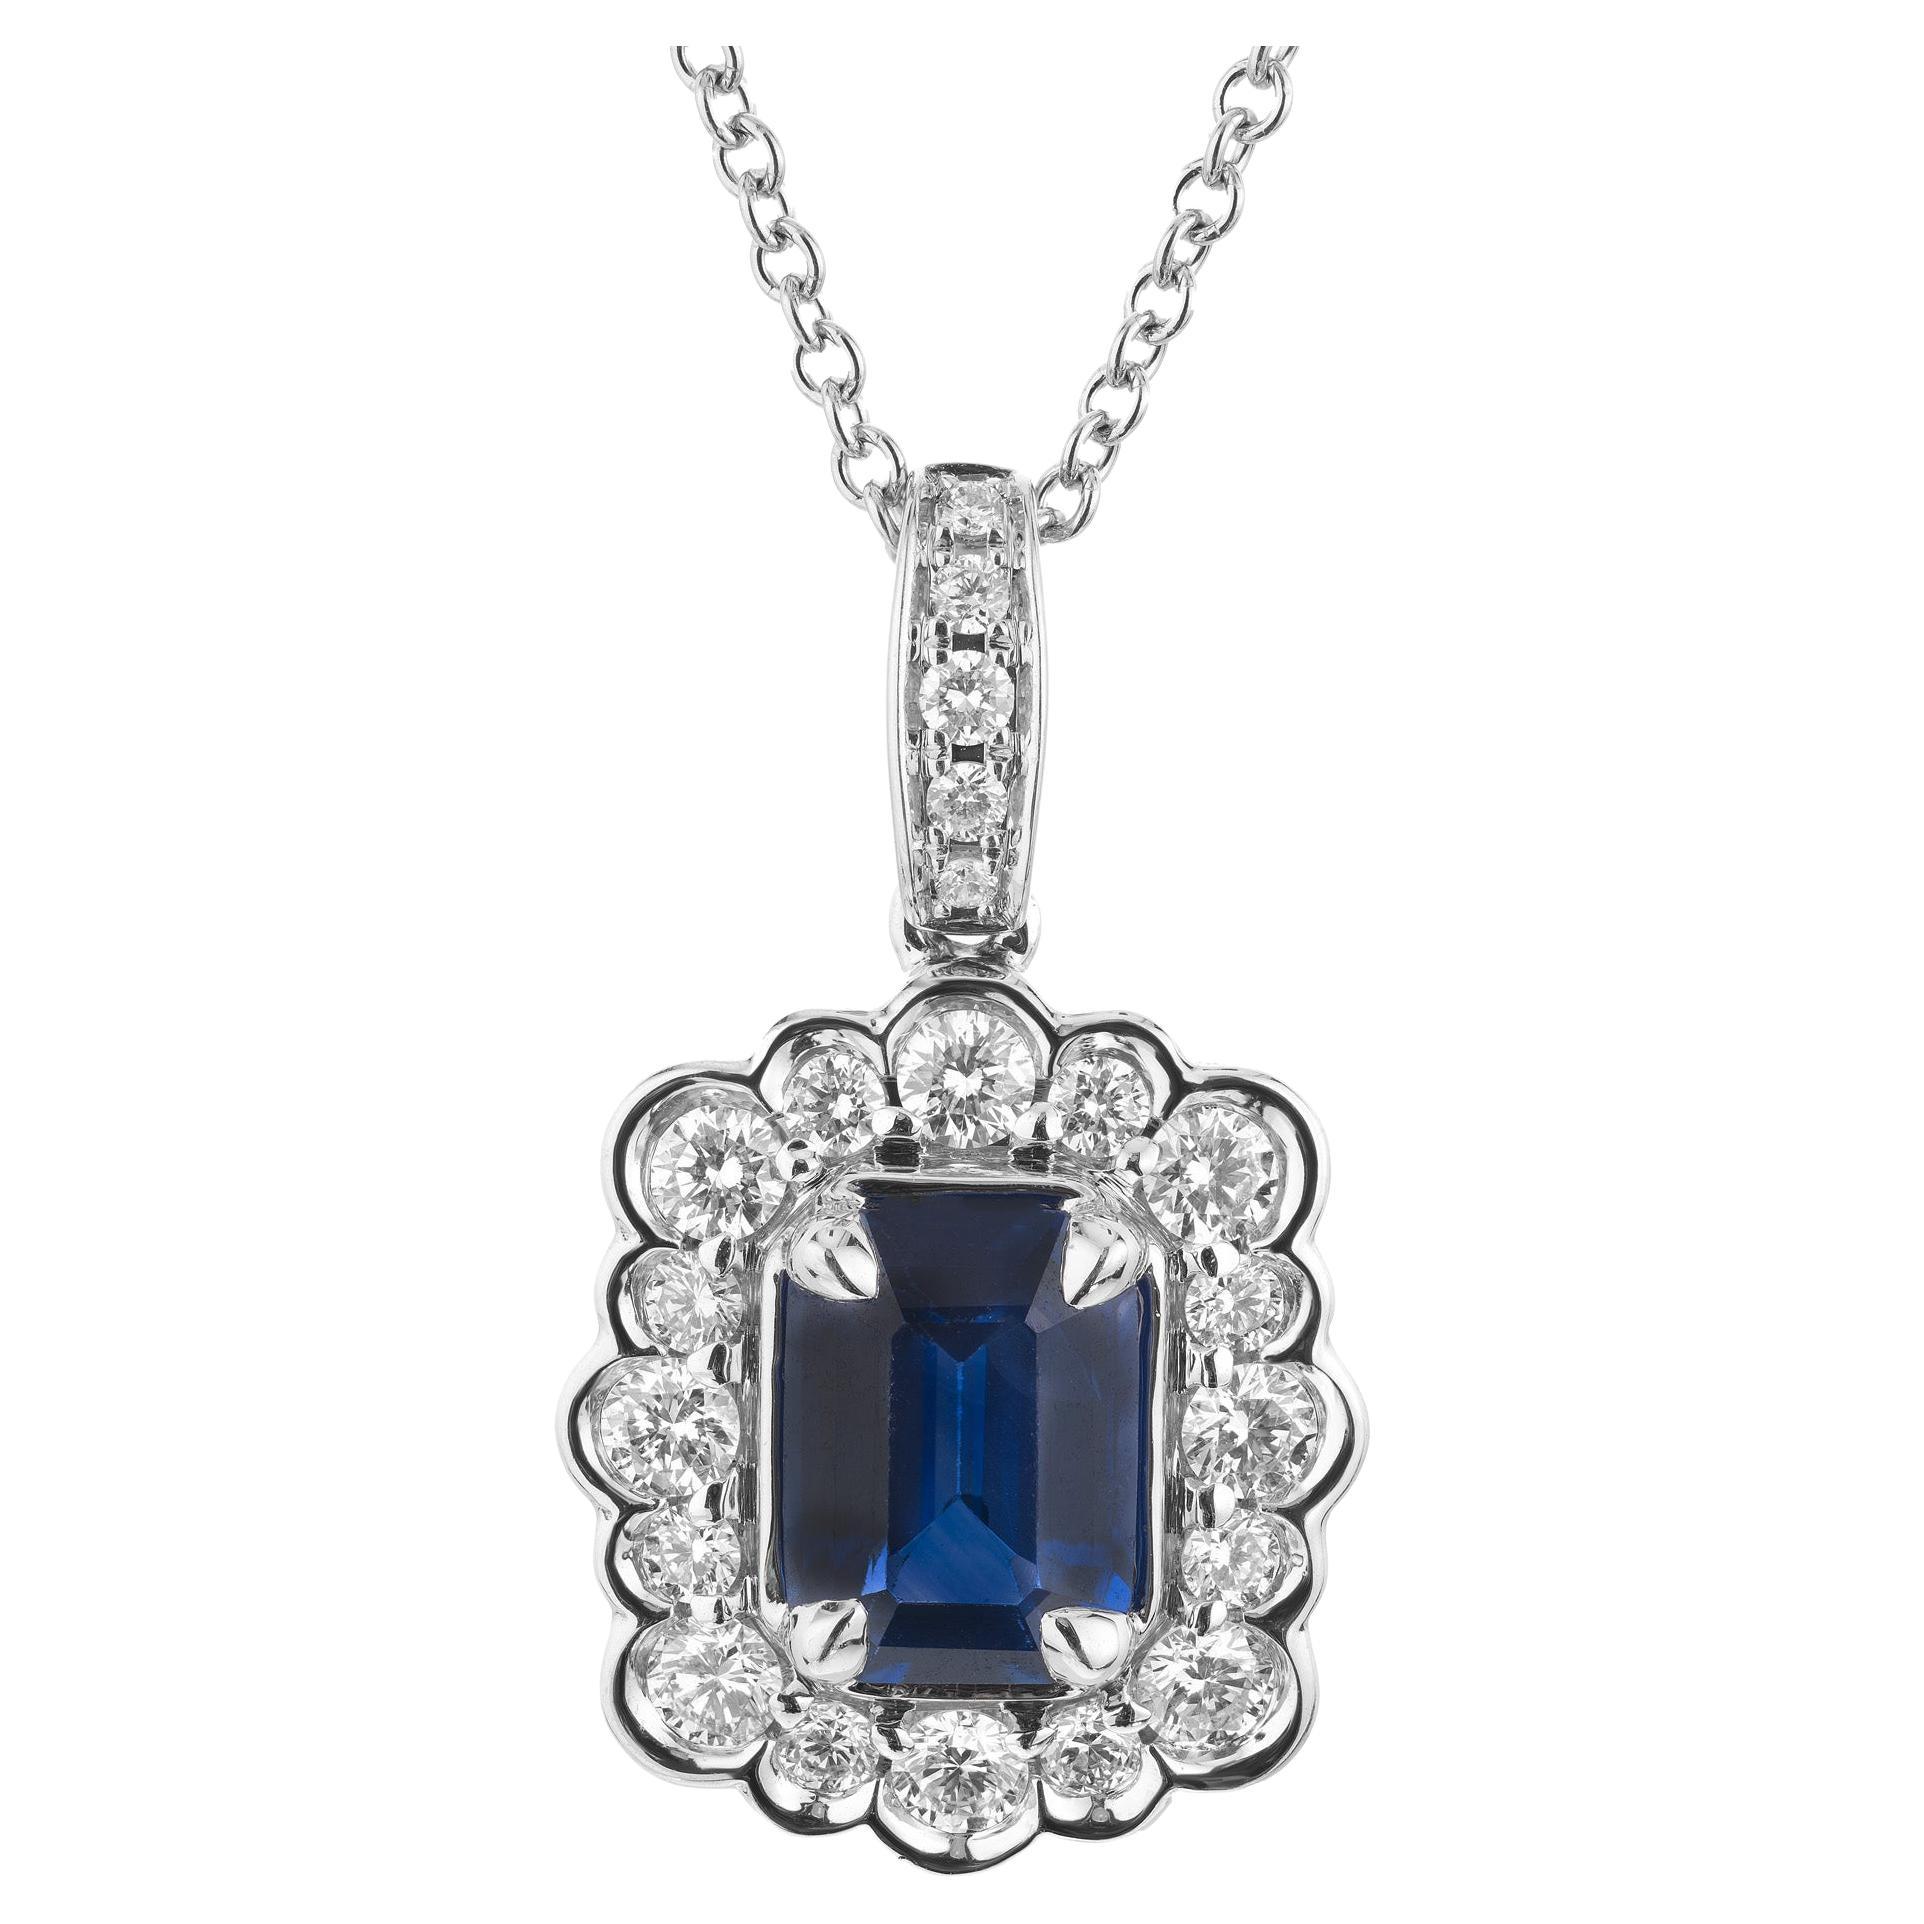 Peter Suchy GIA zertifiziert 1,29 Karat Saphir Diamant Halo Gold Anhänger Halskette